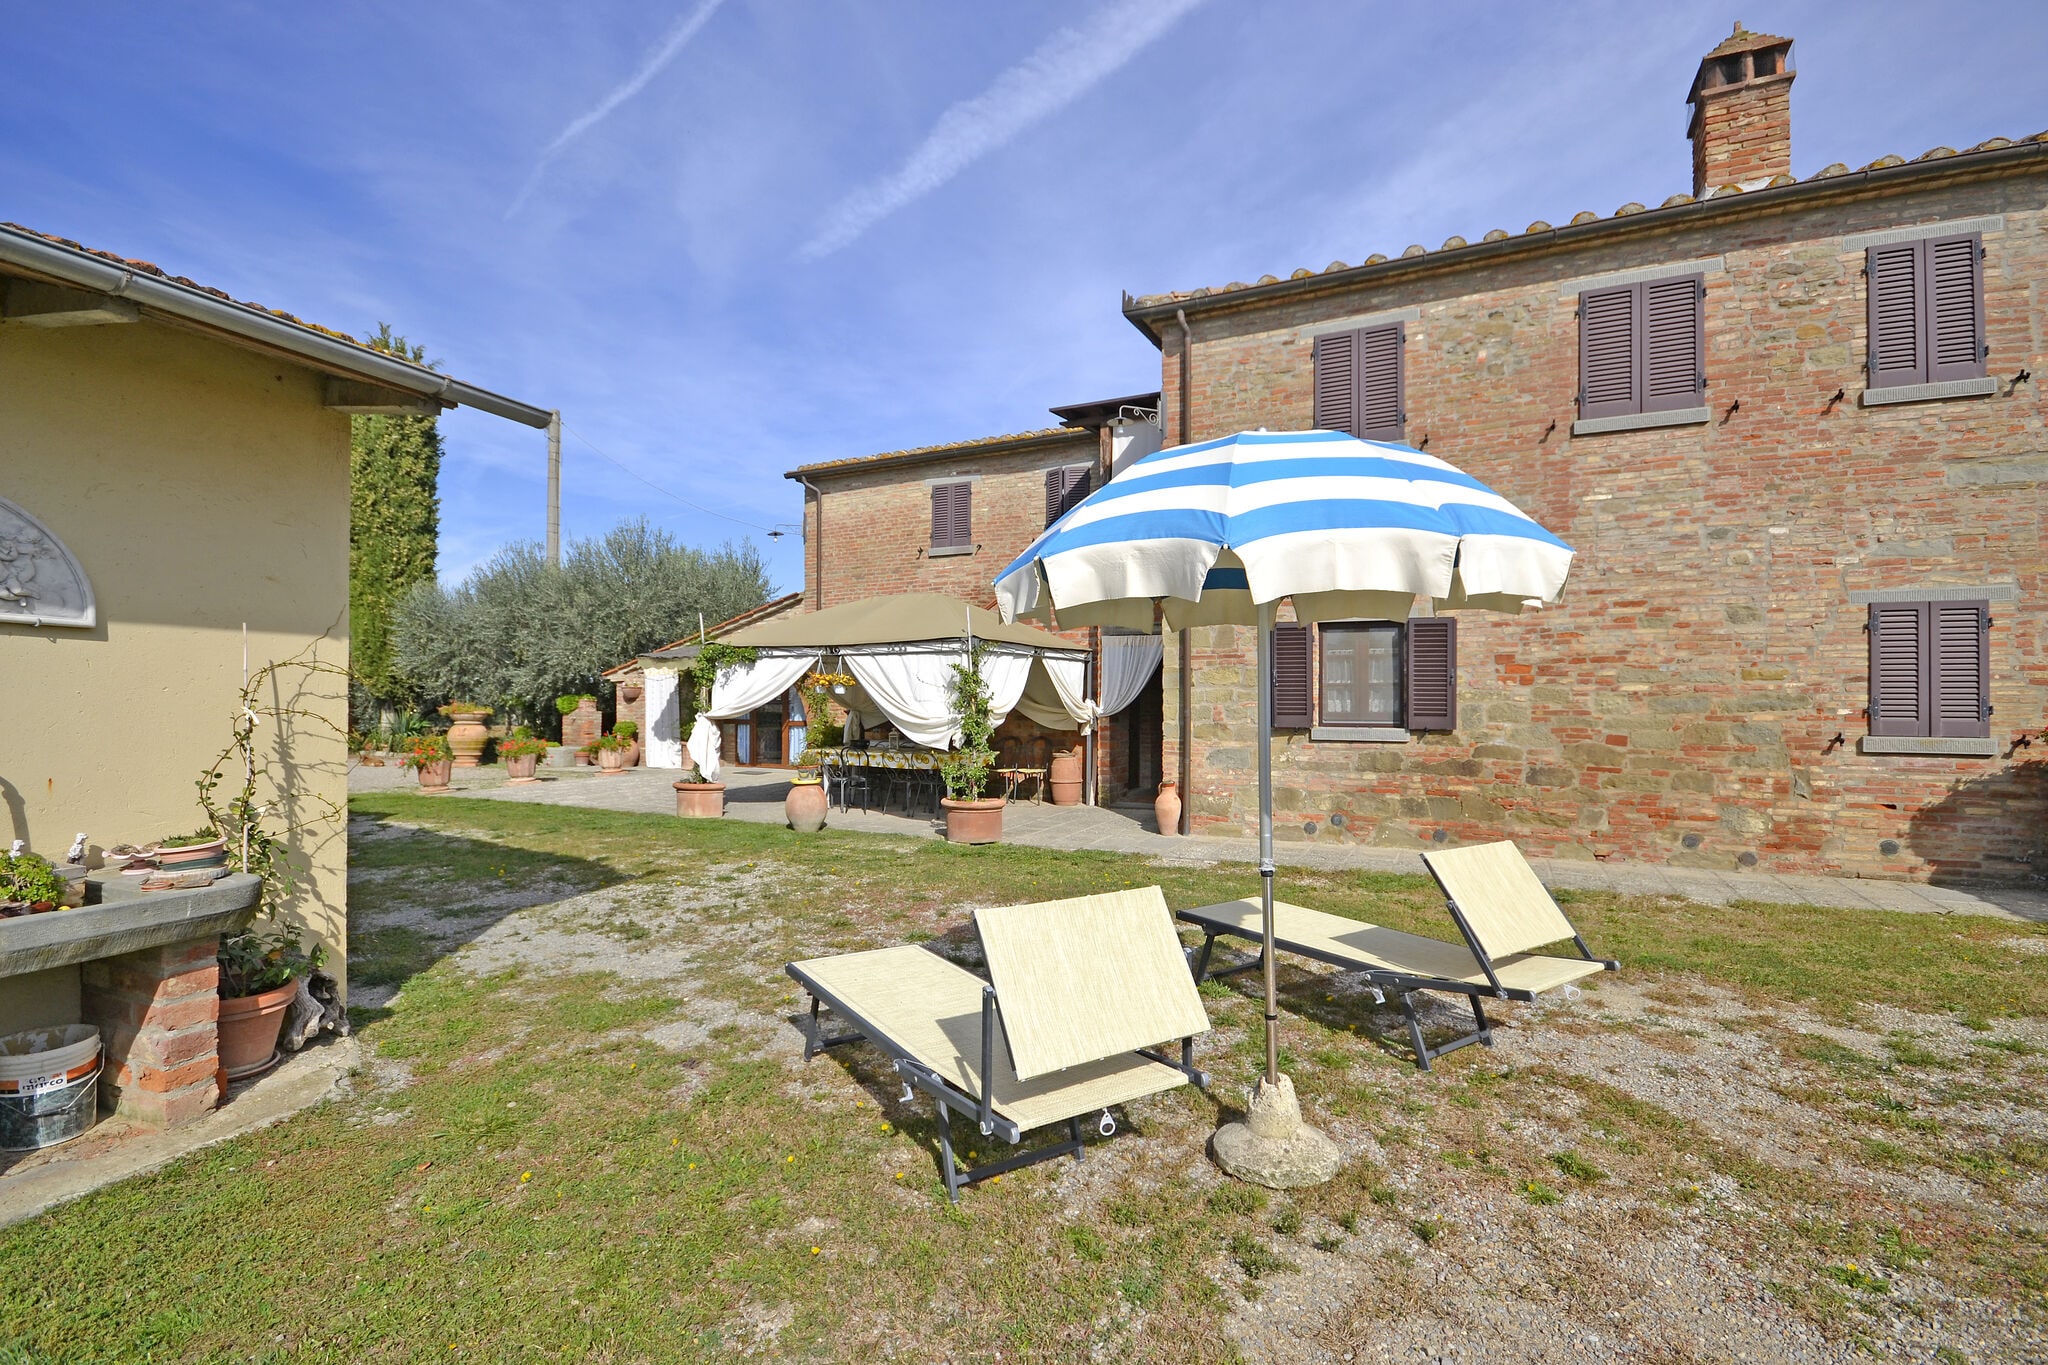 Villa paisible avec piscine privée située à Cortona